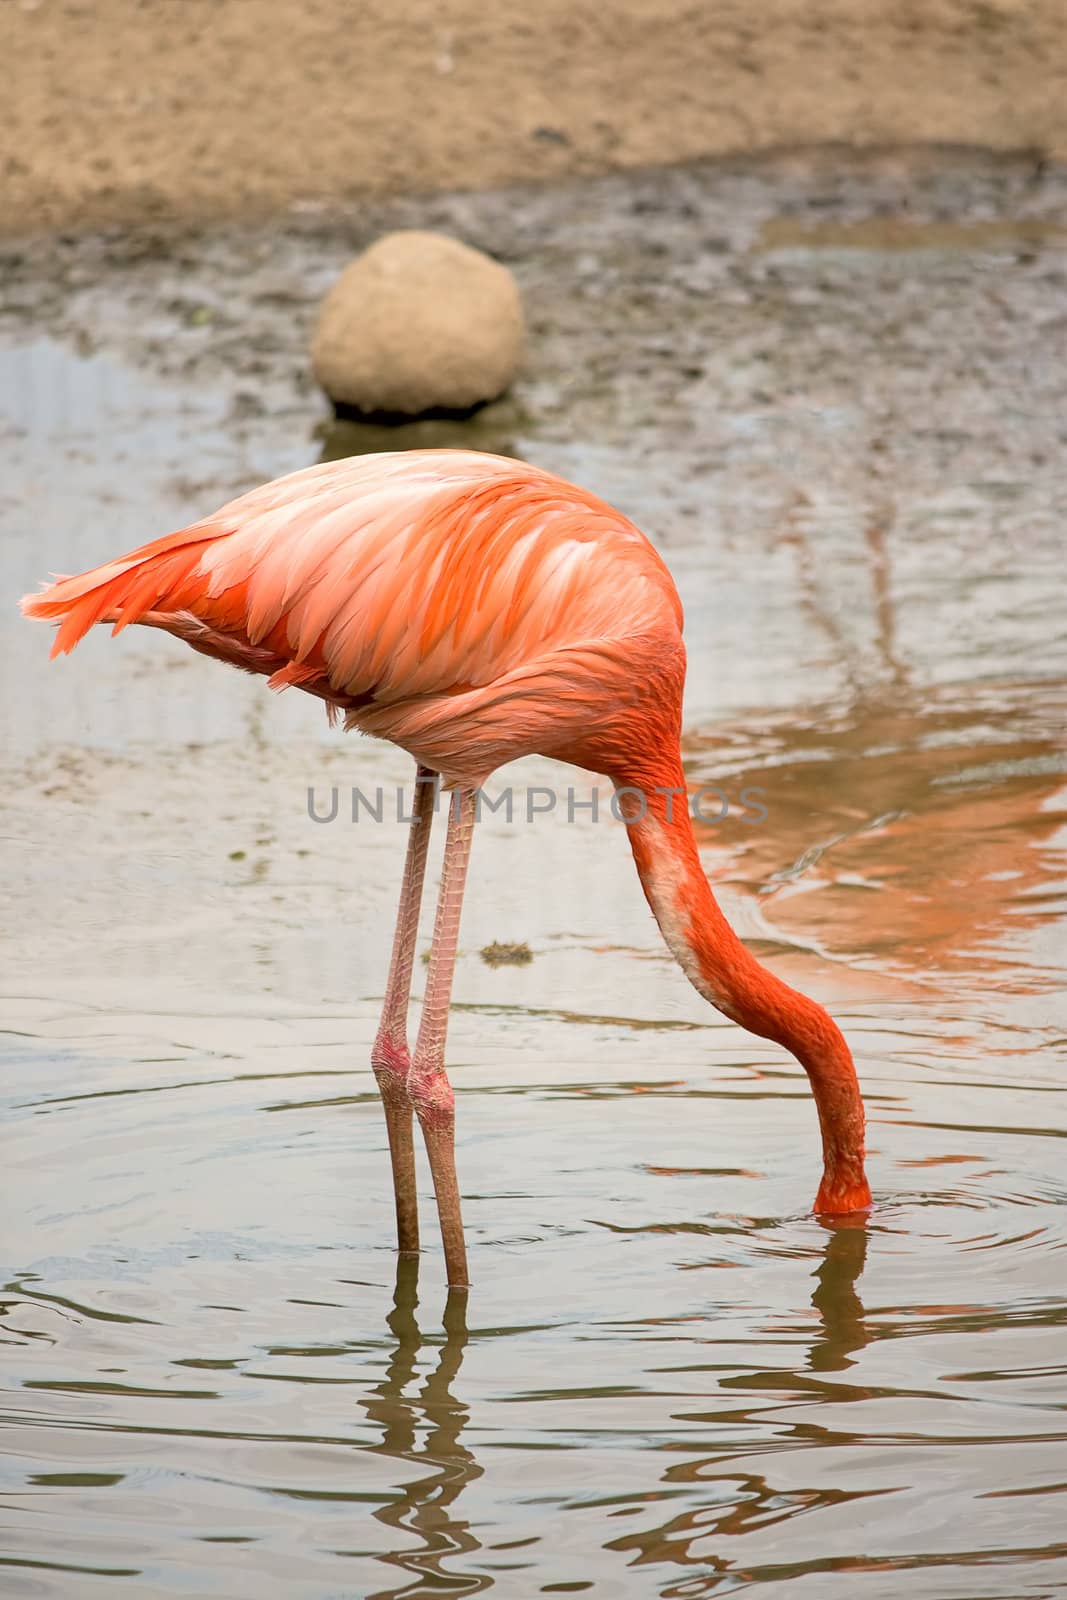  Flamingo by zhannaprokopeva